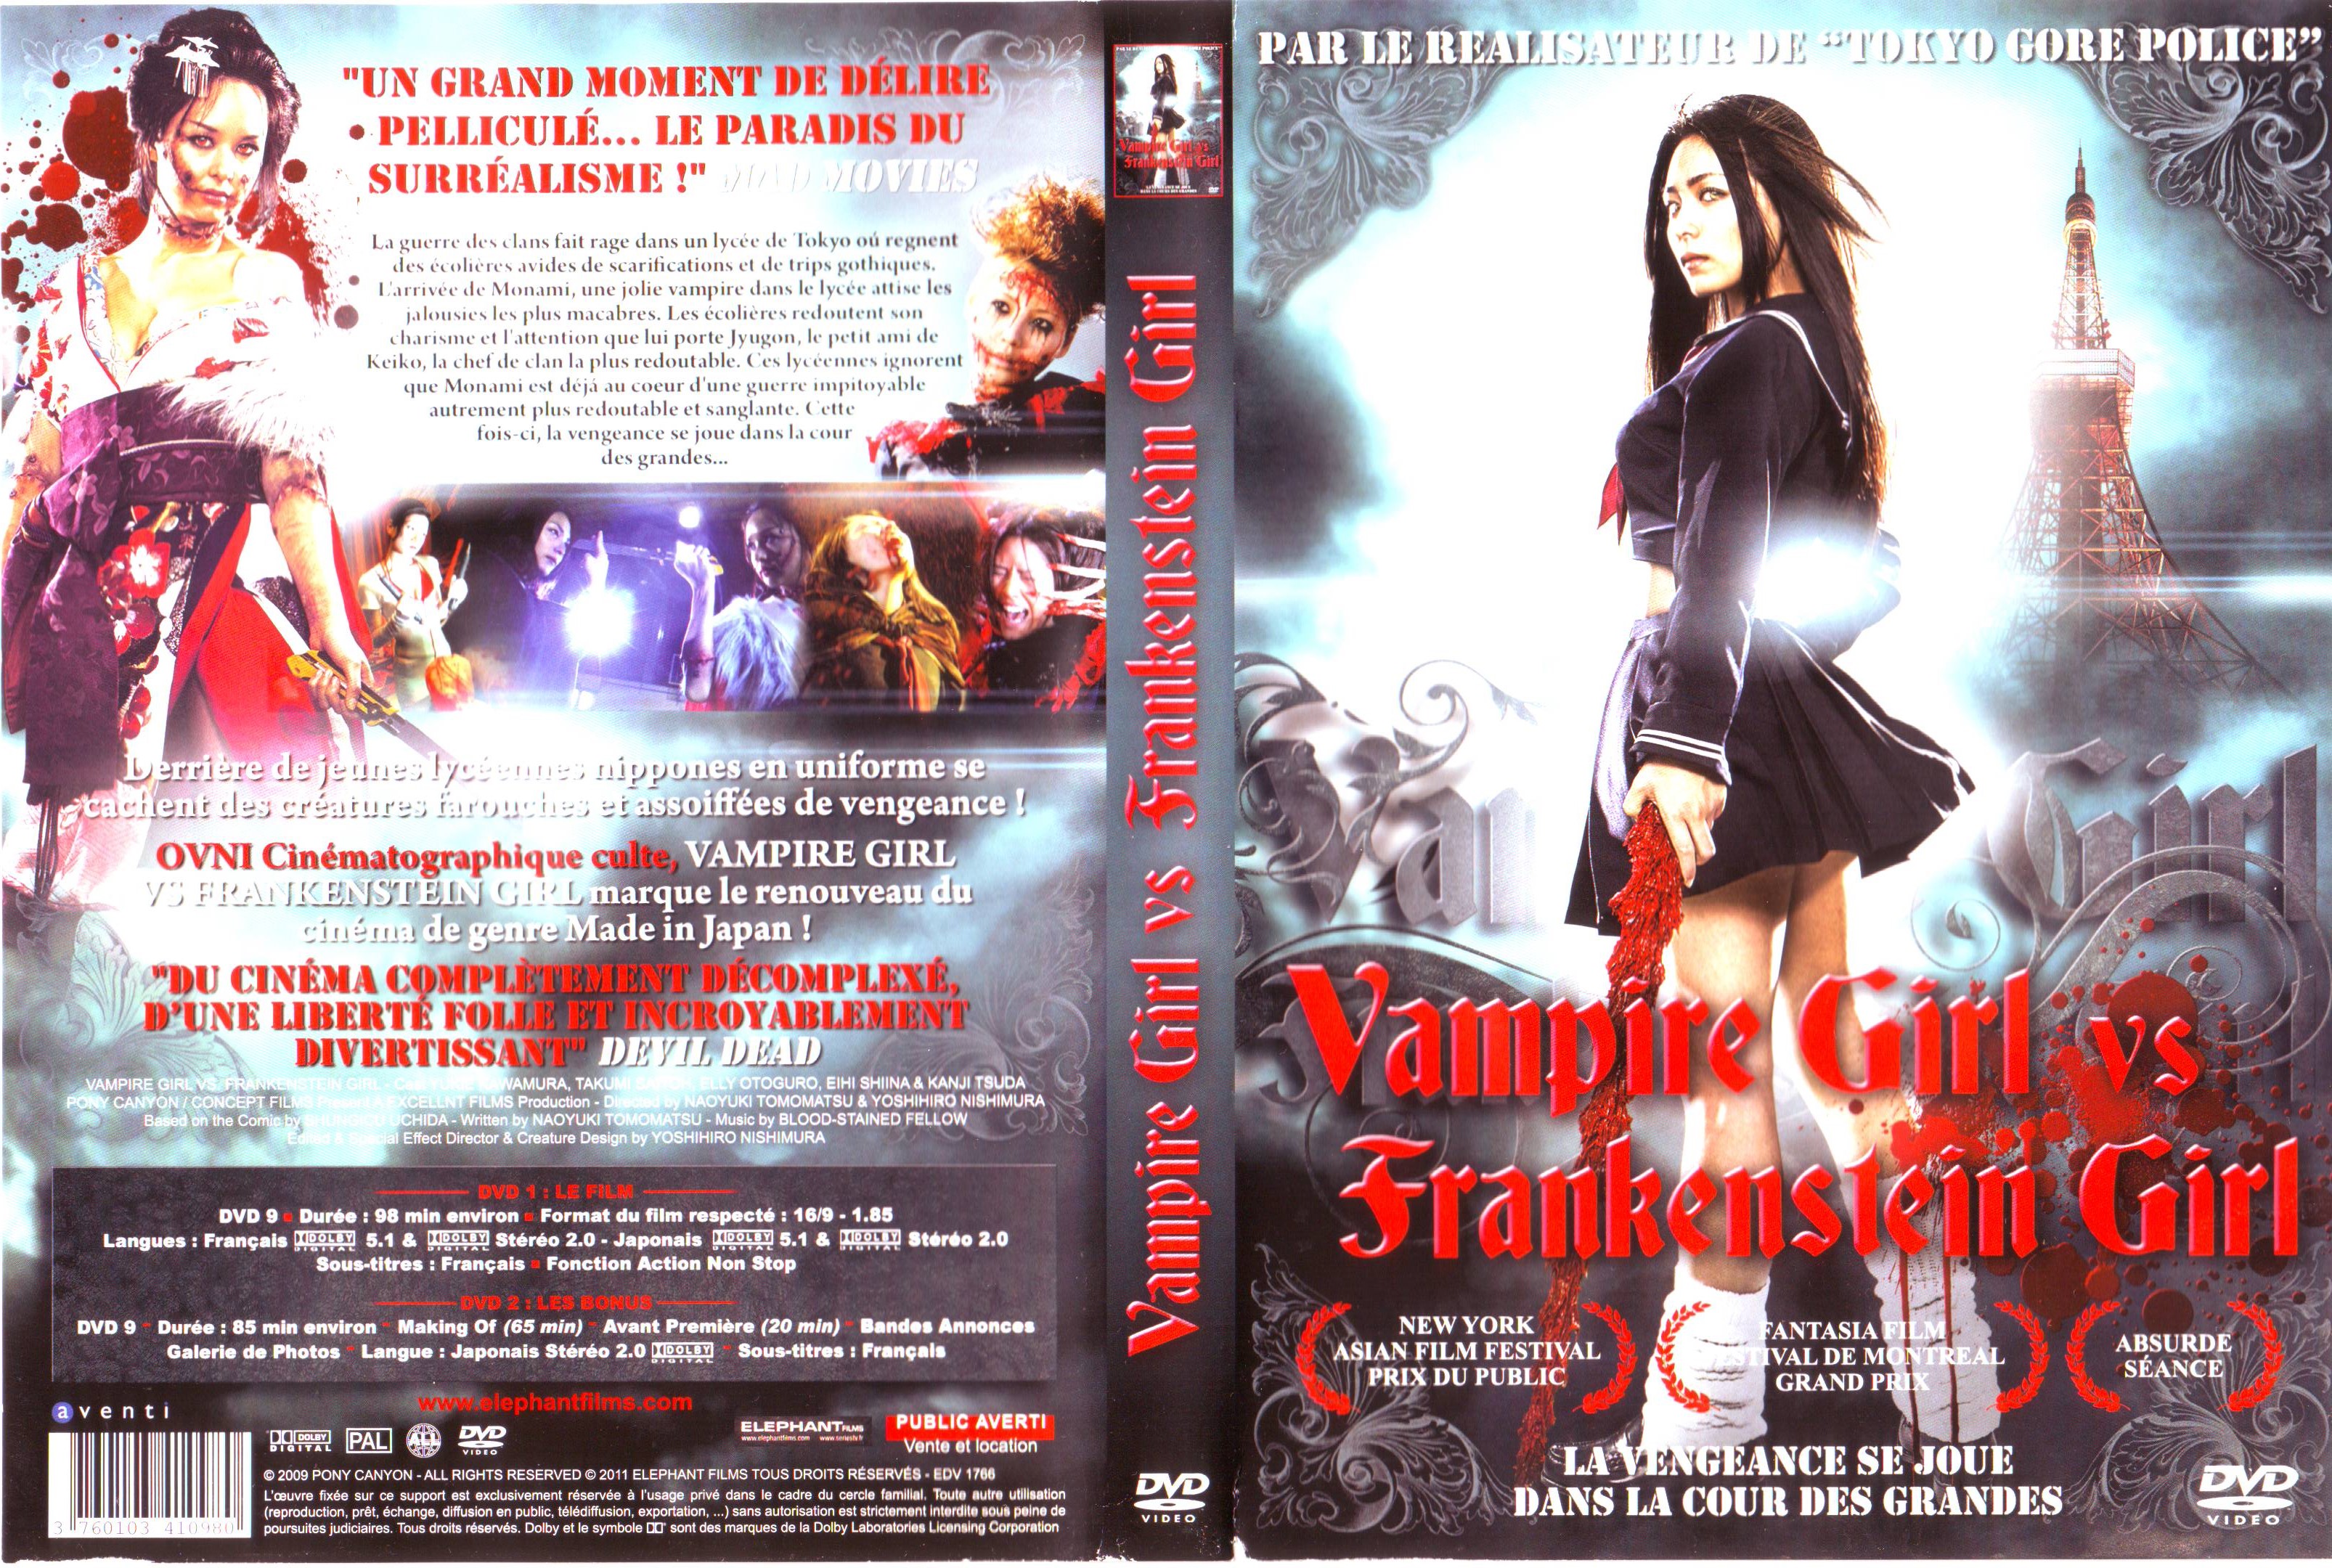 Jaquette DVD Vampire Girl vs Frankenstein Girl